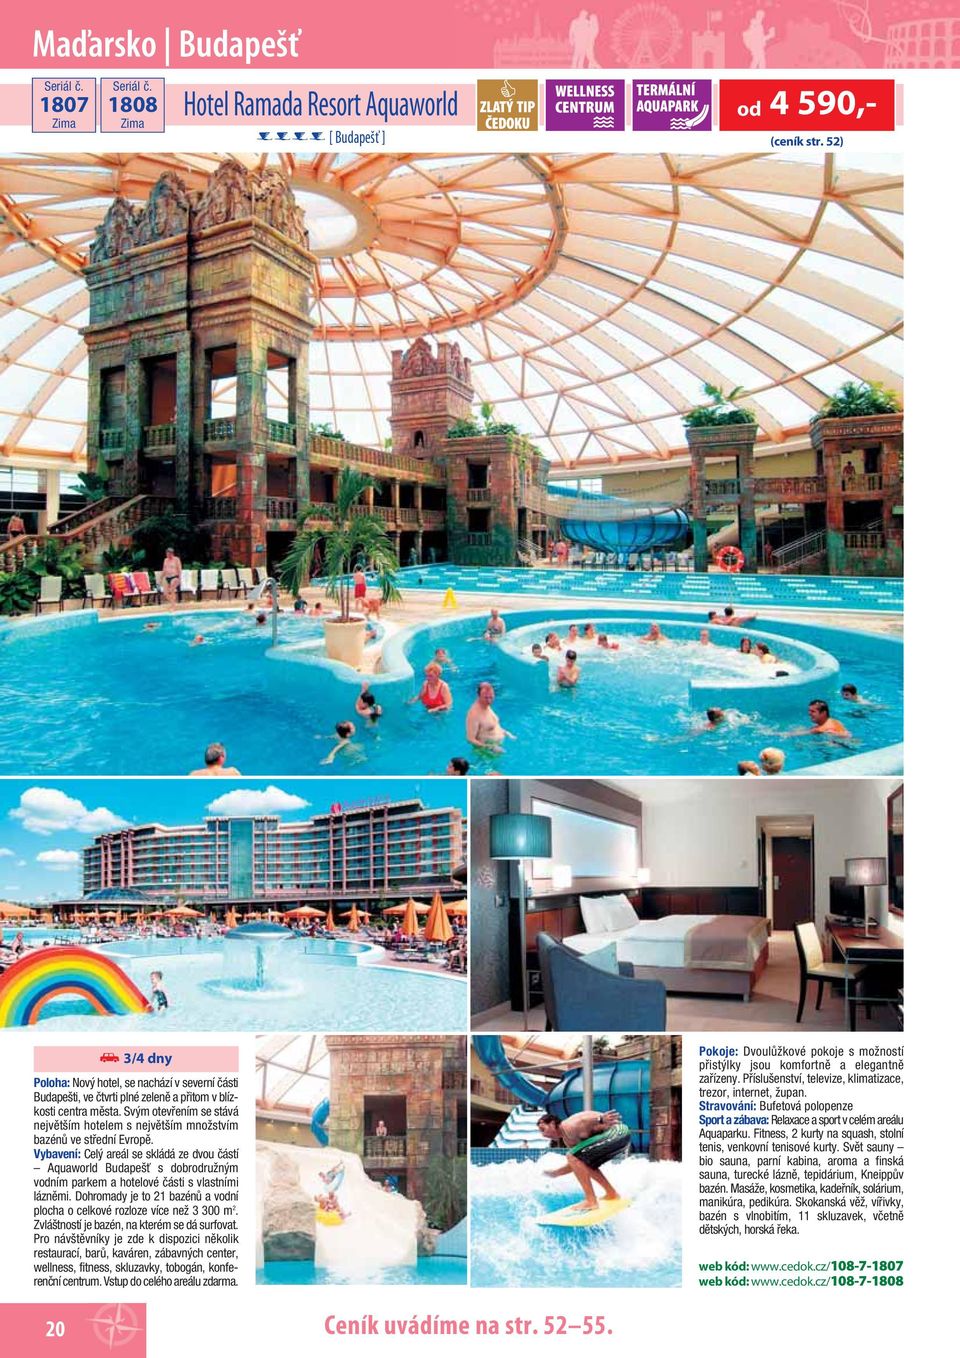 Svým otevřením se stává největším hotelem s největším množstvím bazénů ve střední Evropě.